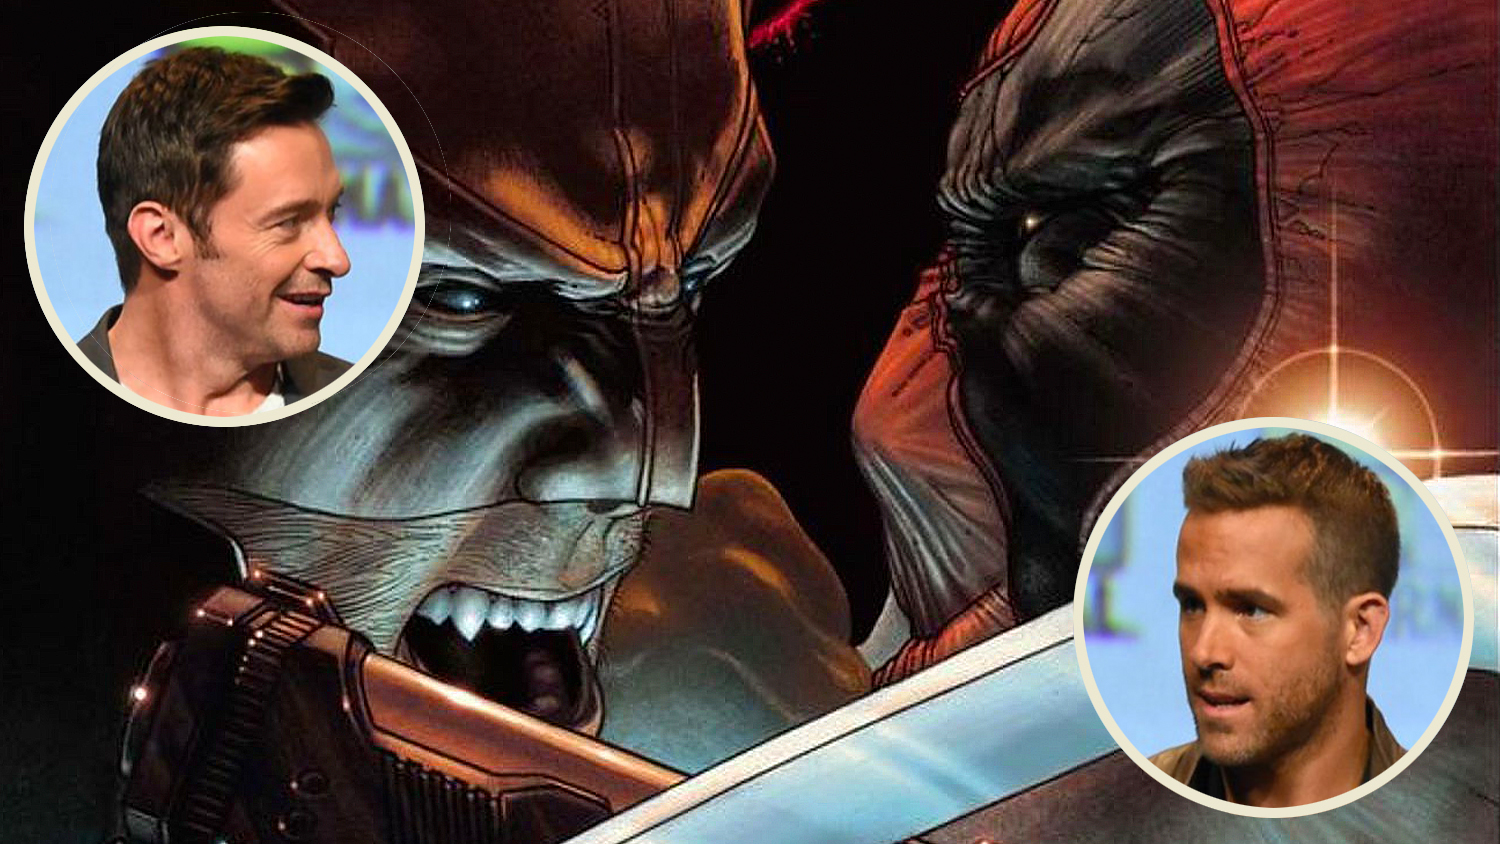 Wolverine Vs Deadpool Feud Heats Up On Social Media Movie